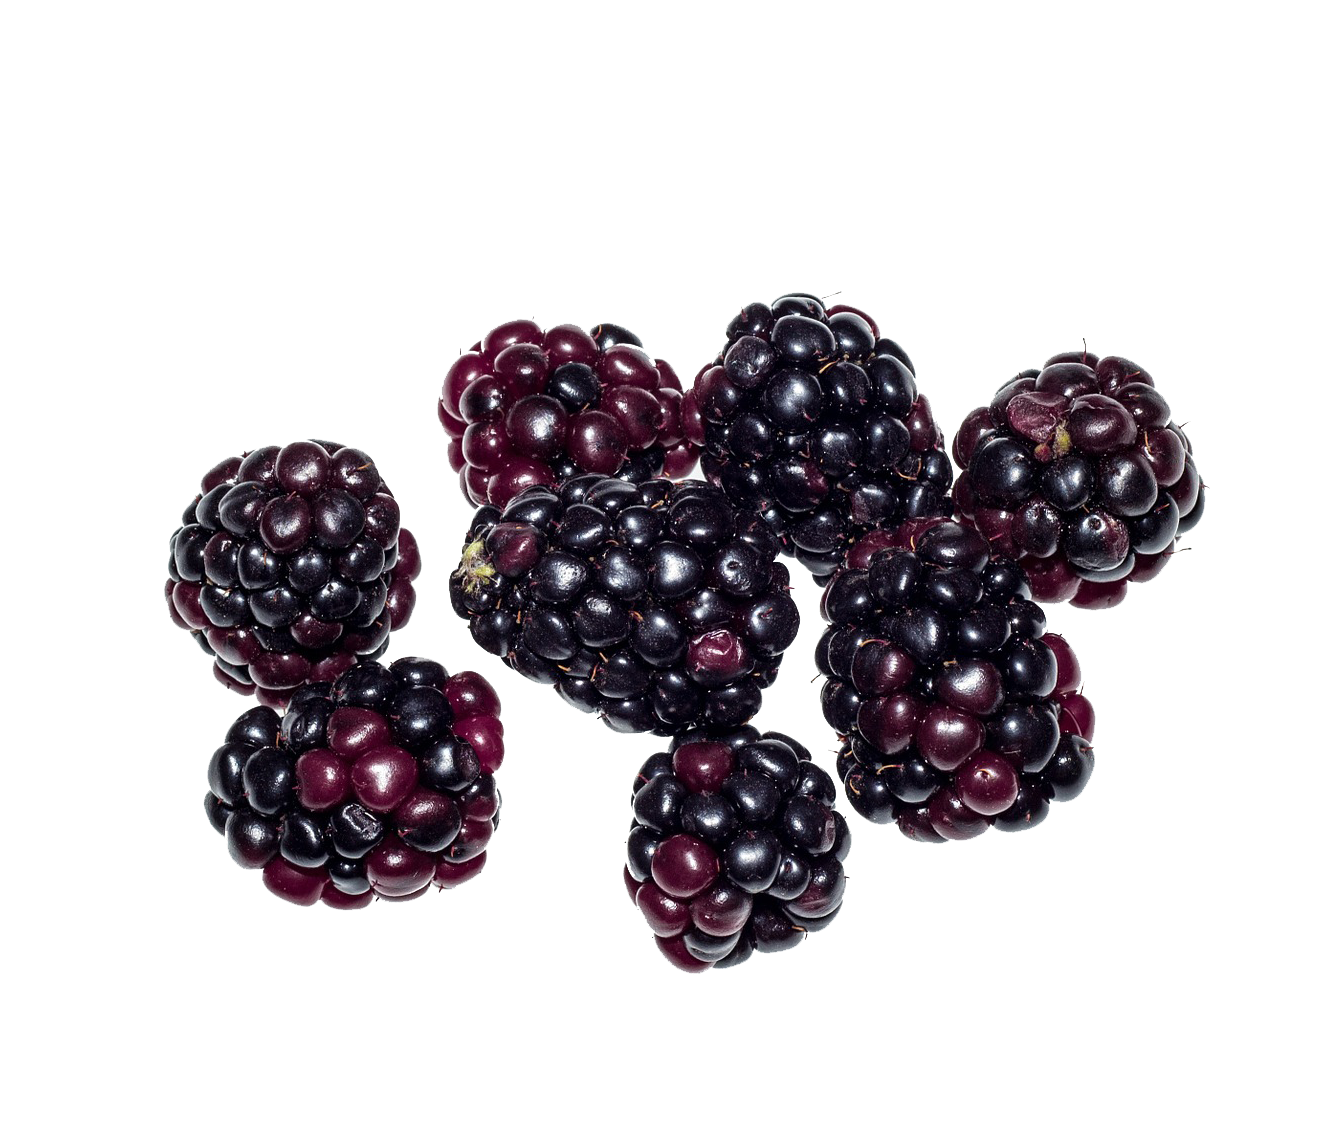 Blackberry Fruit PNG in Transparent - Blackberry Fruit Png